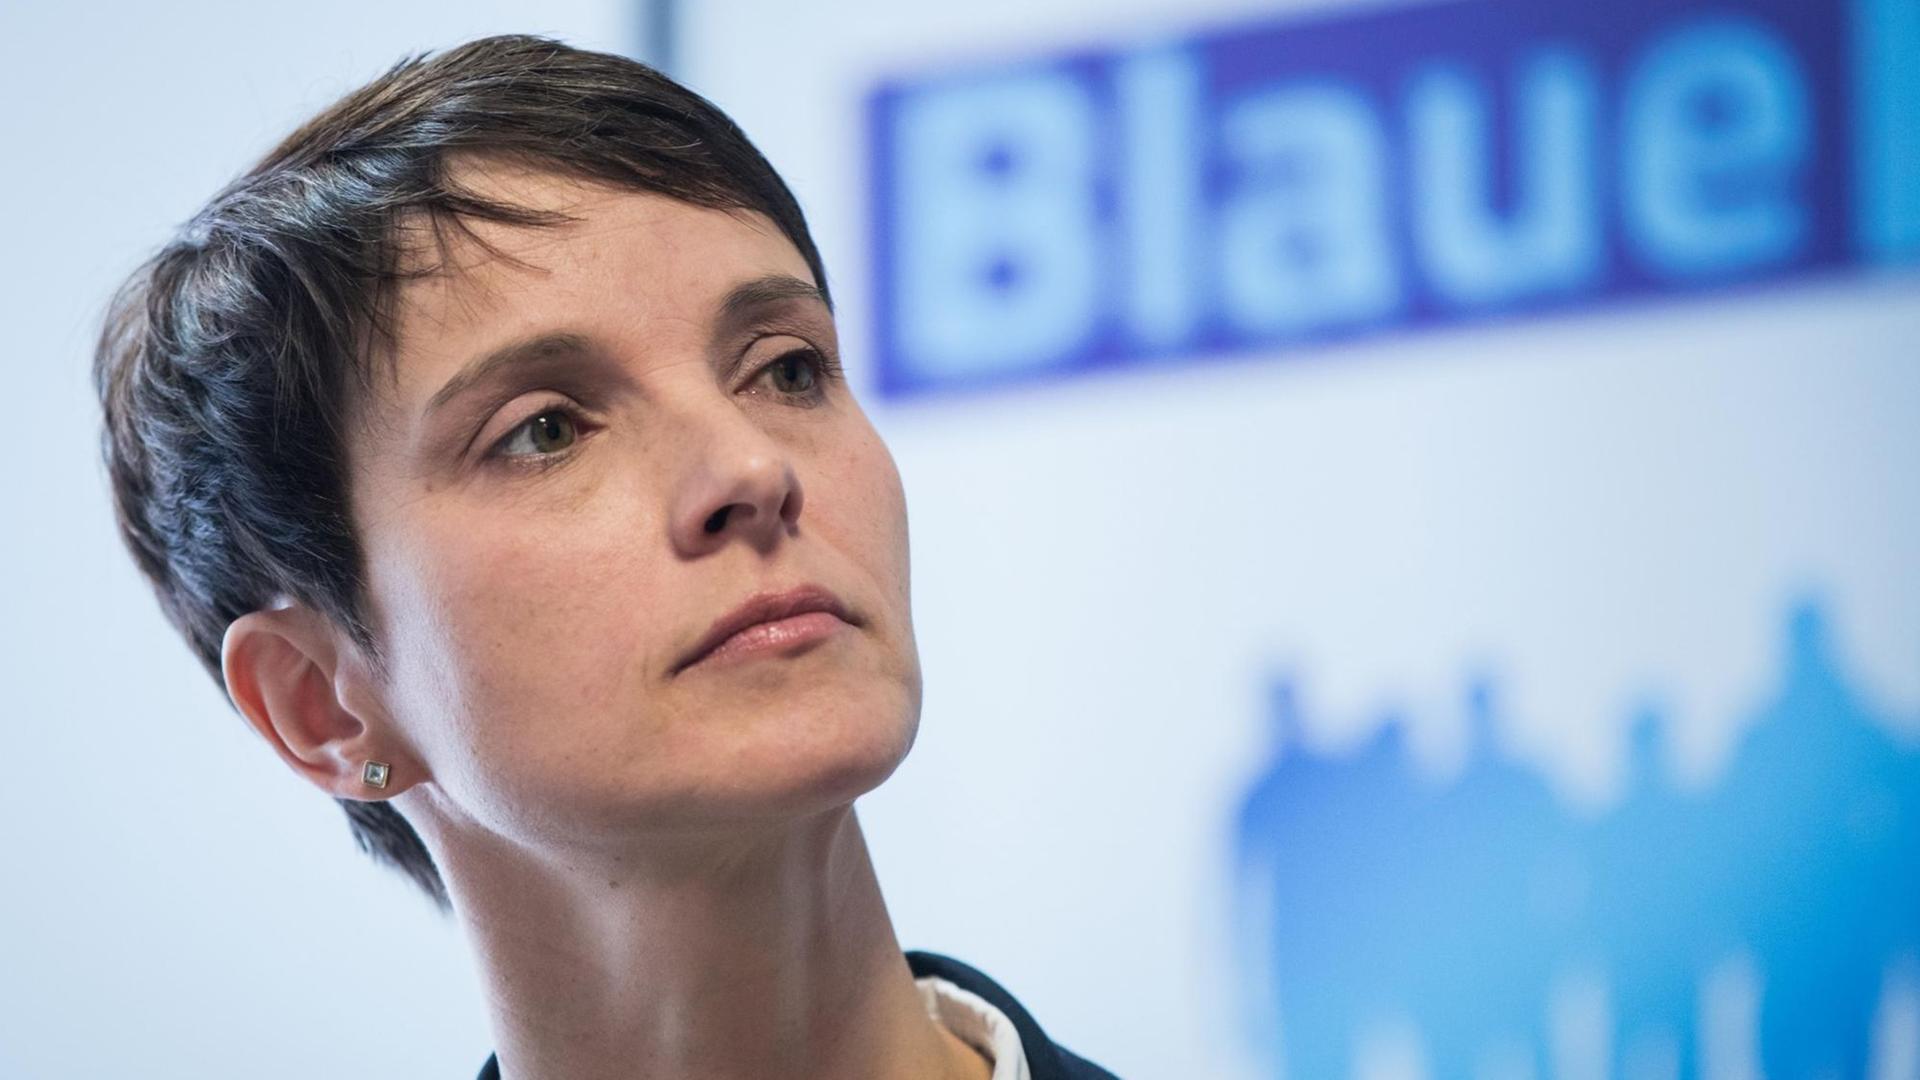 Die ehemalige AfD-Chefin Frauke Petry spricht in Rodgau bei einer Diskussionsveranstaltung, wo sie den Startschuss für ihr neues Bürgerforum "Blaue Wende" gab.